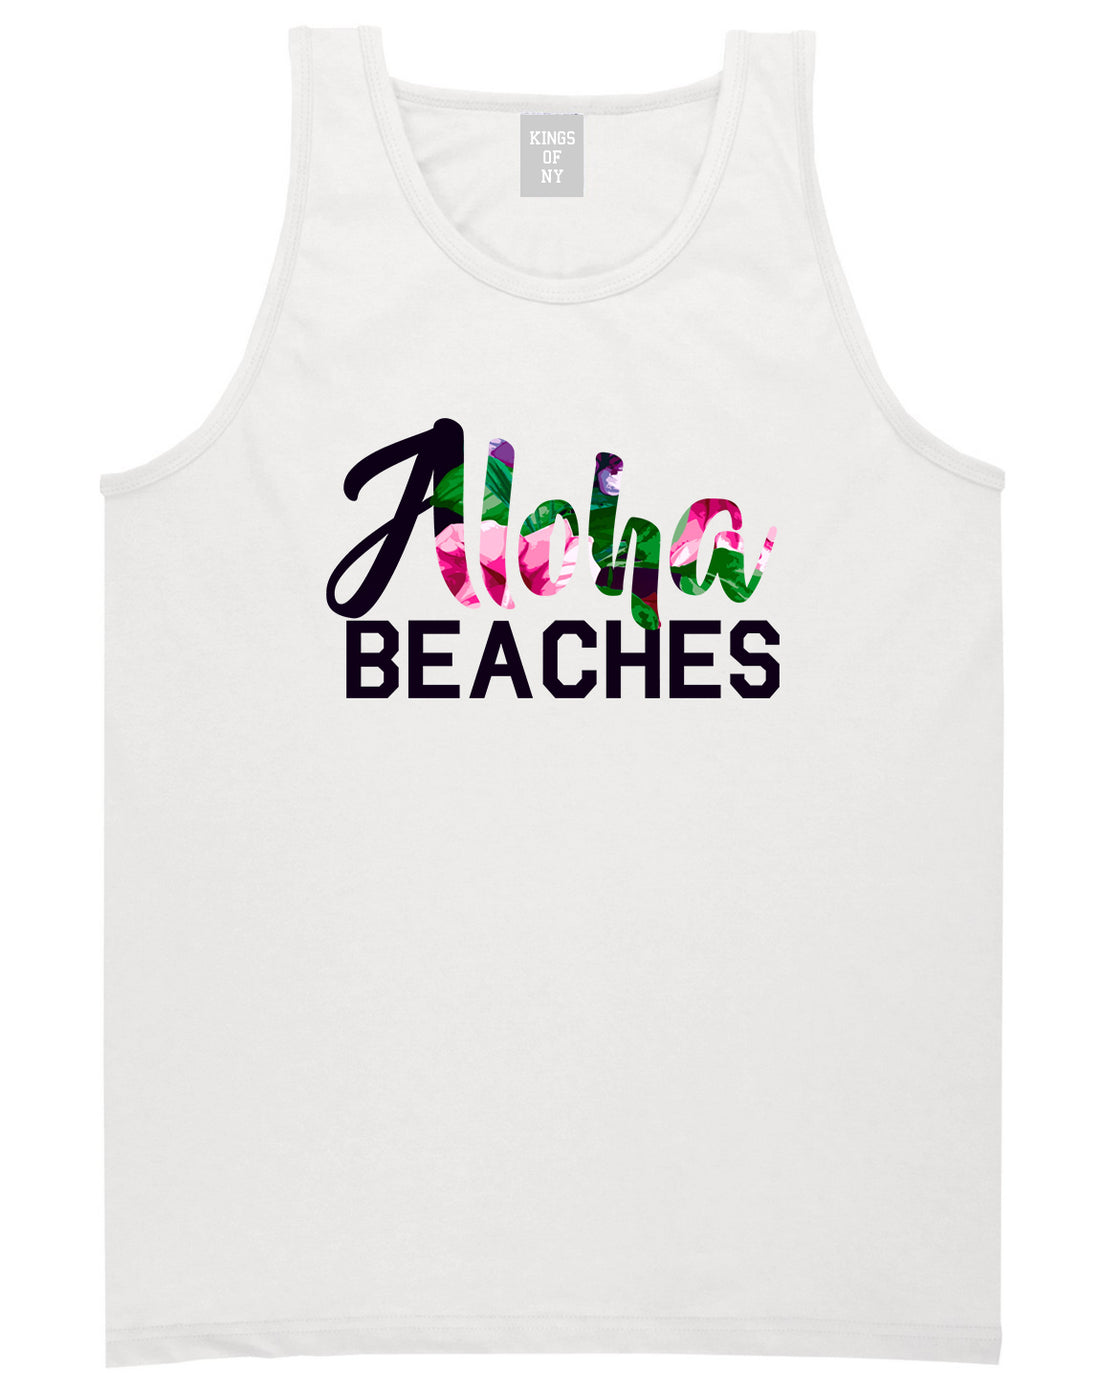 Aloha Beaches White Tank Top Shirt by Kings Of NY